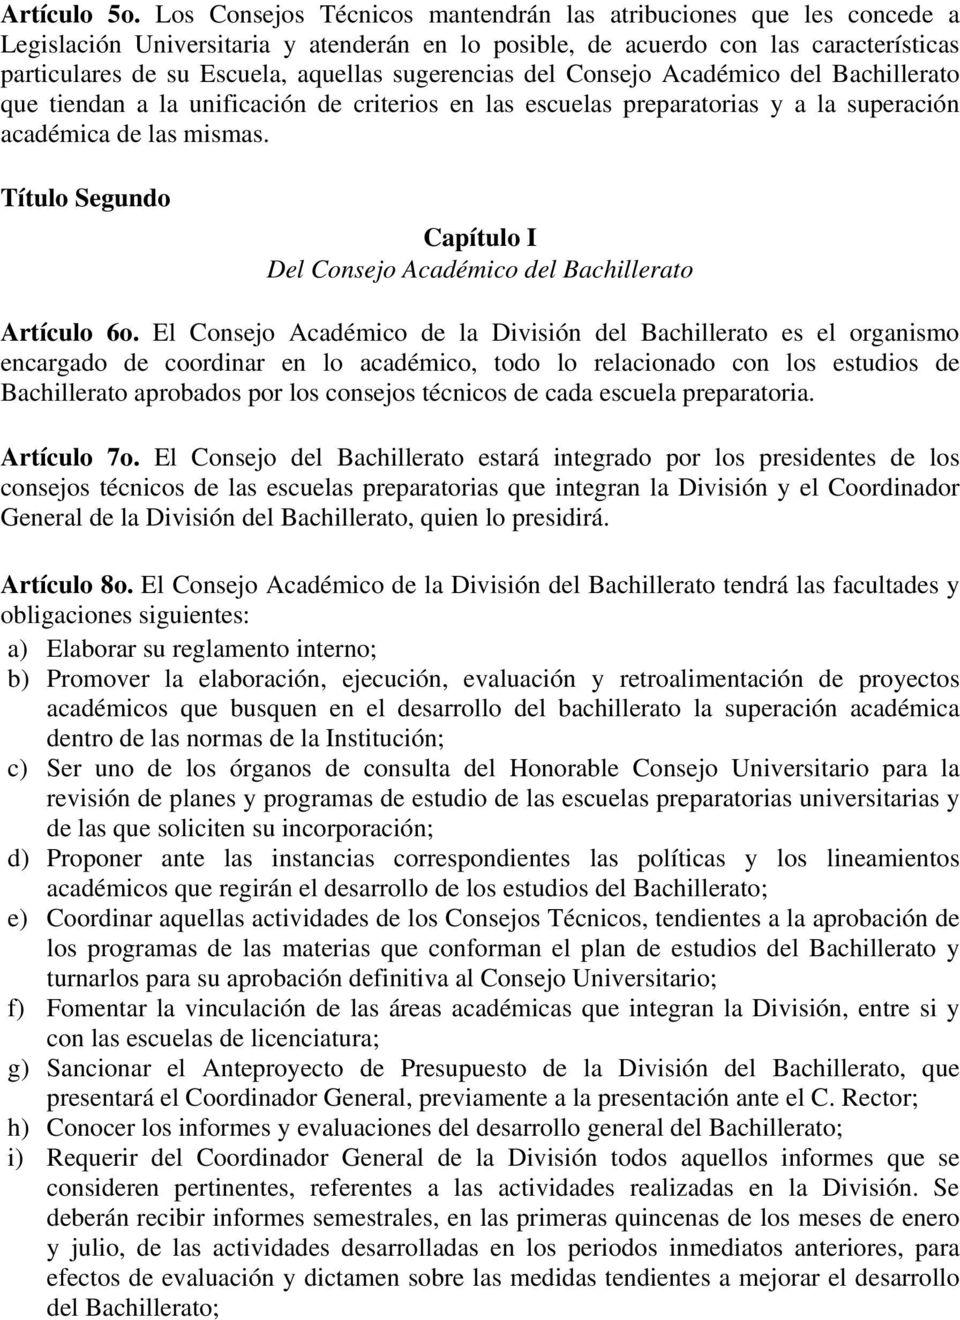 sugerencias del Consejo Académico del Bachillerato que tiendan a la unificación de criterios en las escuelas preparatorias y a la superación académica de las mismas.